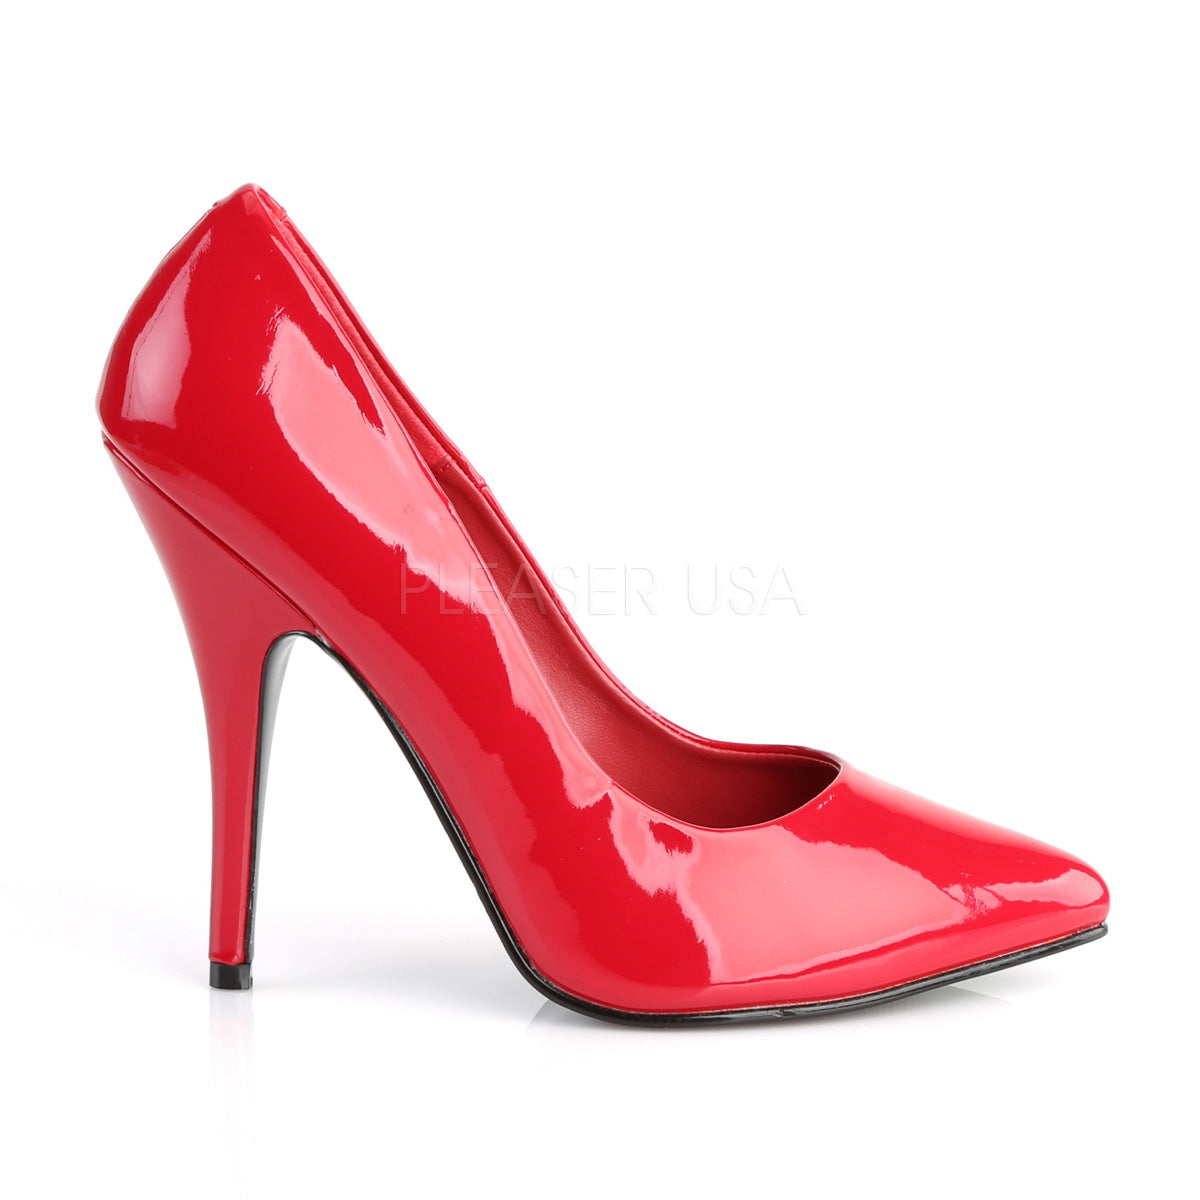 Seduce-420 red heels